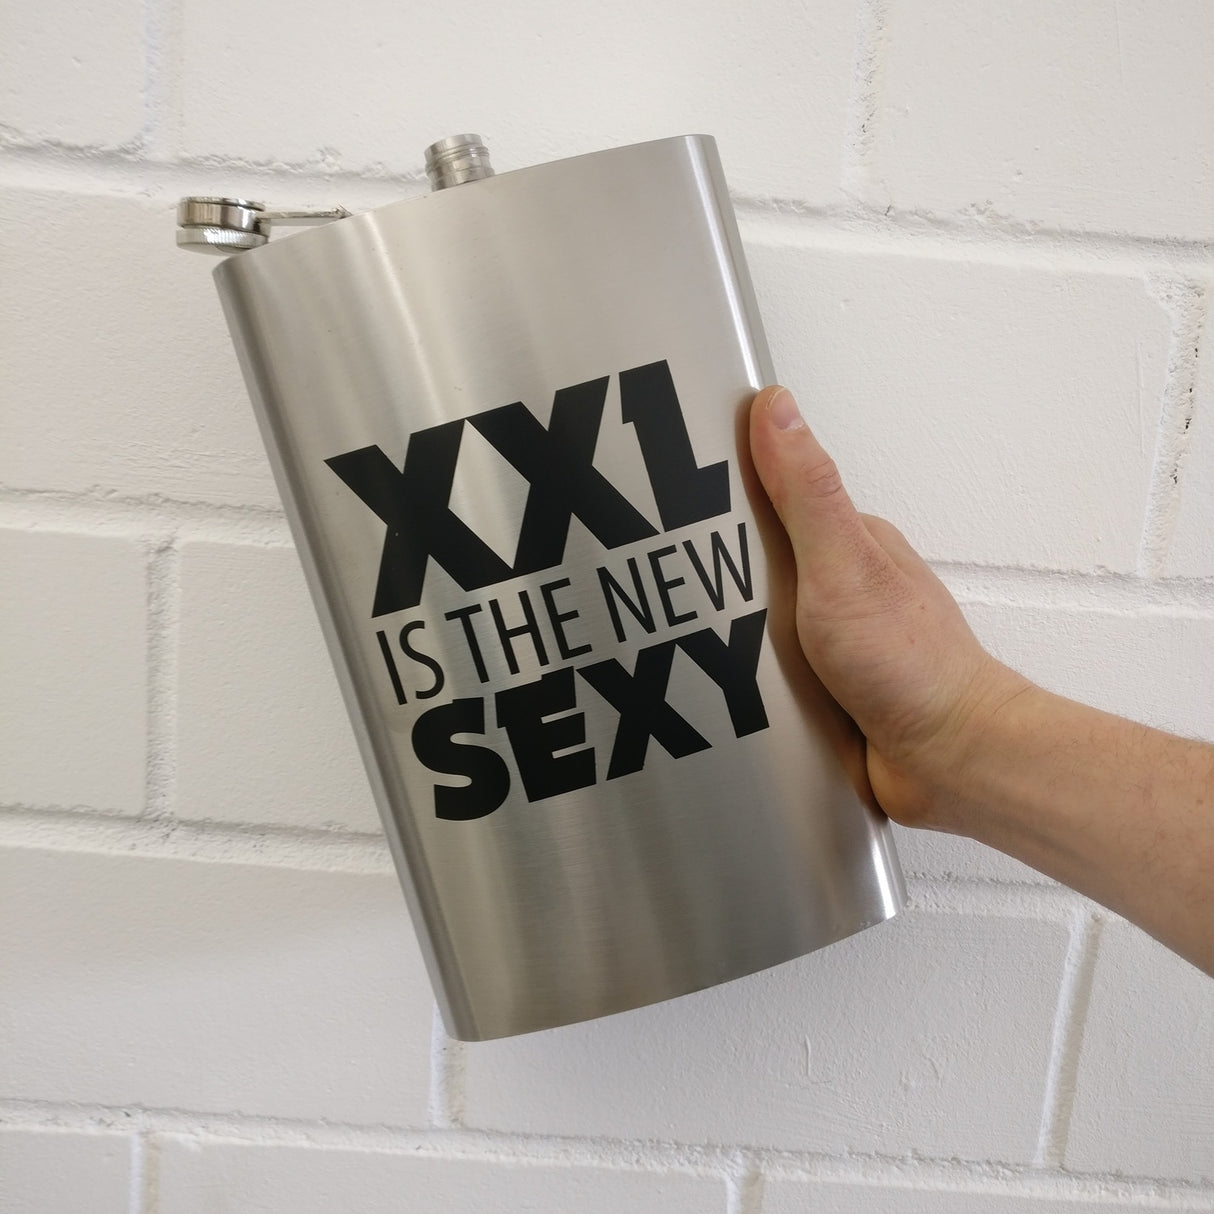 XXL is the new sexy Flachmann mit 1,8l Fassungsvermögen